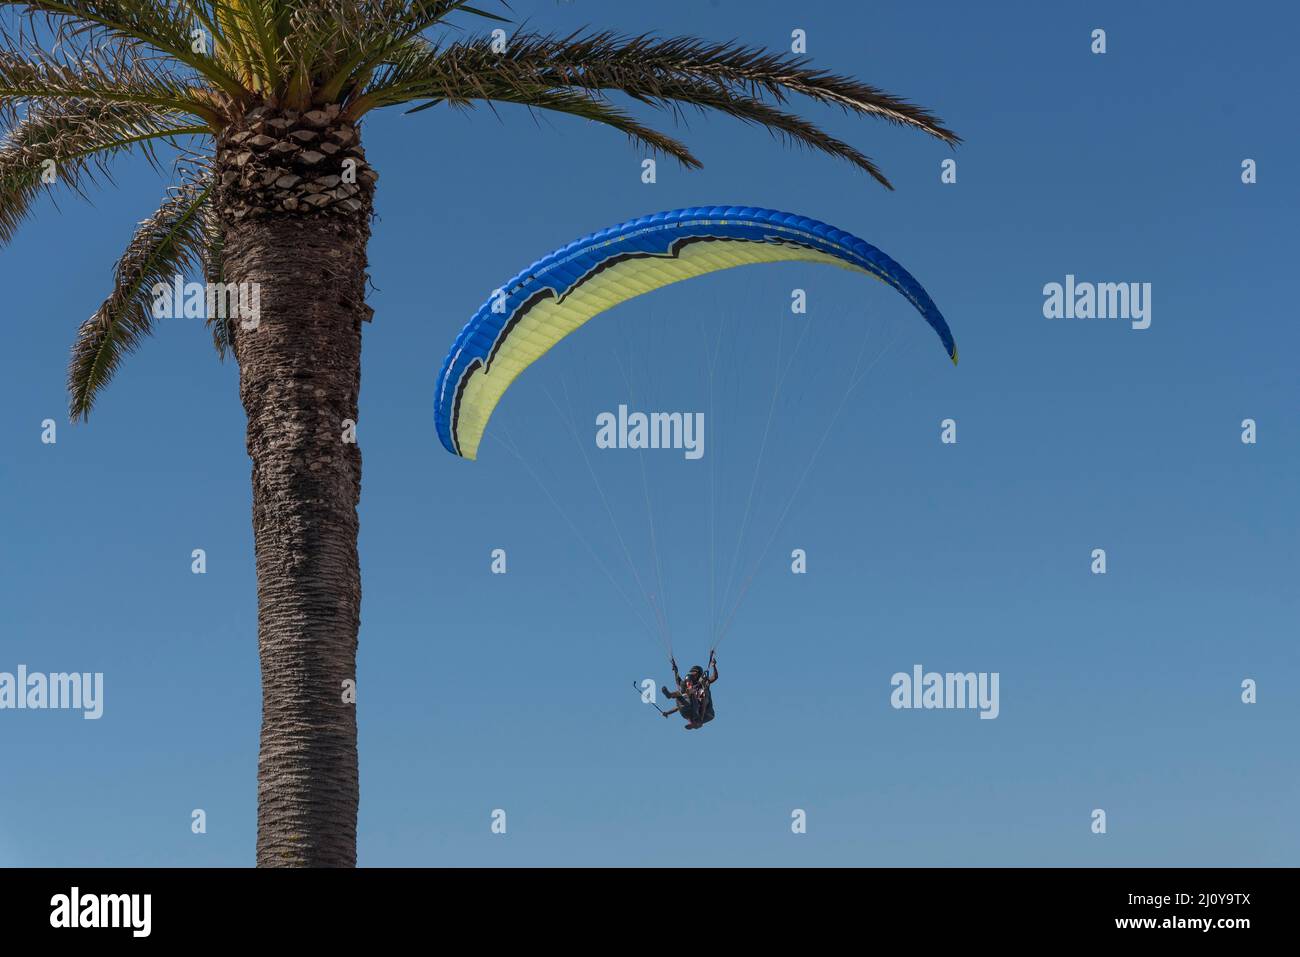 Kapstadt, Südafrika. 2022. Drachenflieger Pilot und Passagier machen Selfie-Bilder umrahmt von einer Palme. Stockfoto